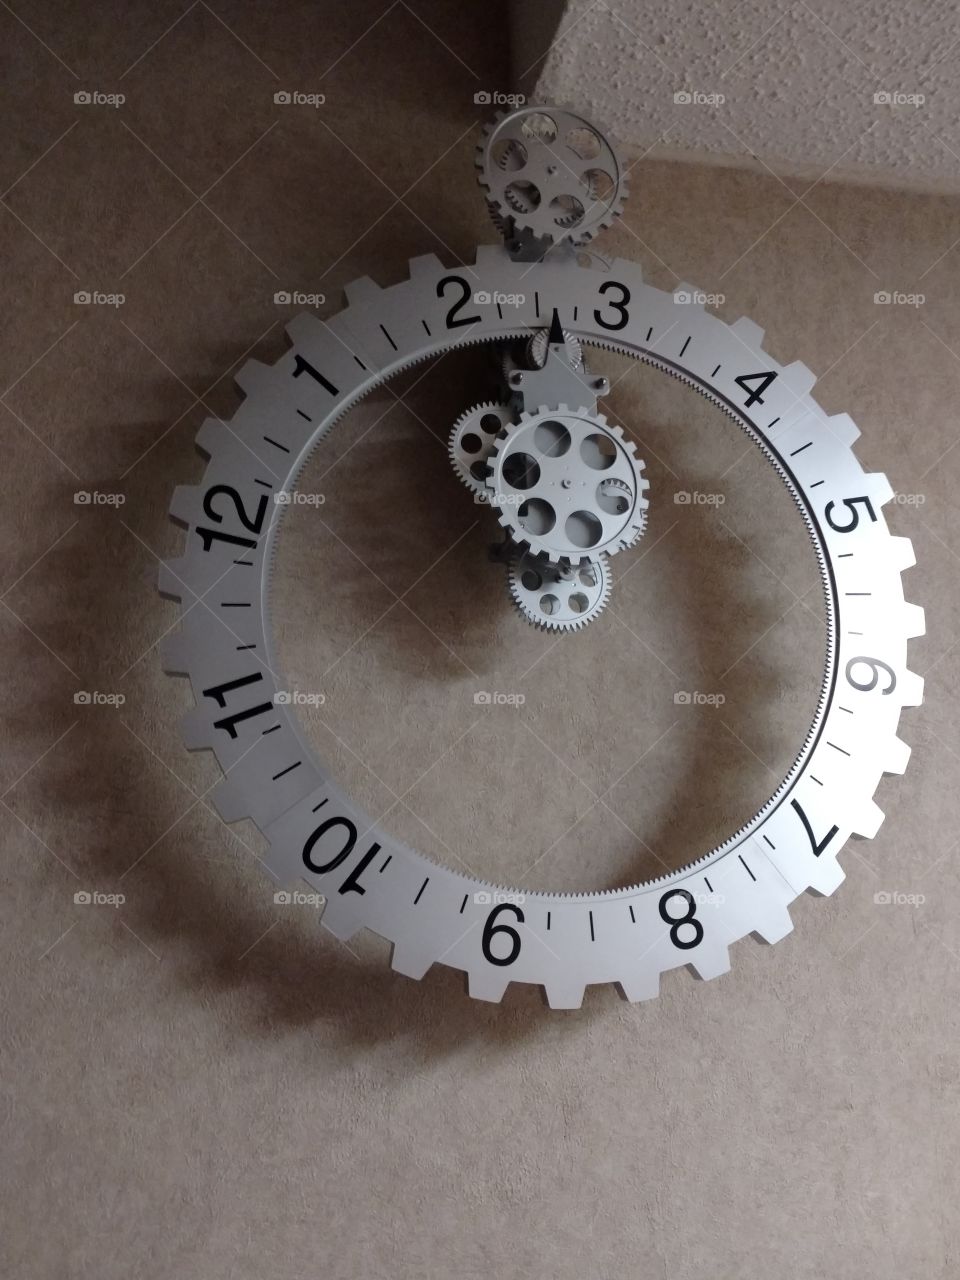 Mechanical gear clock